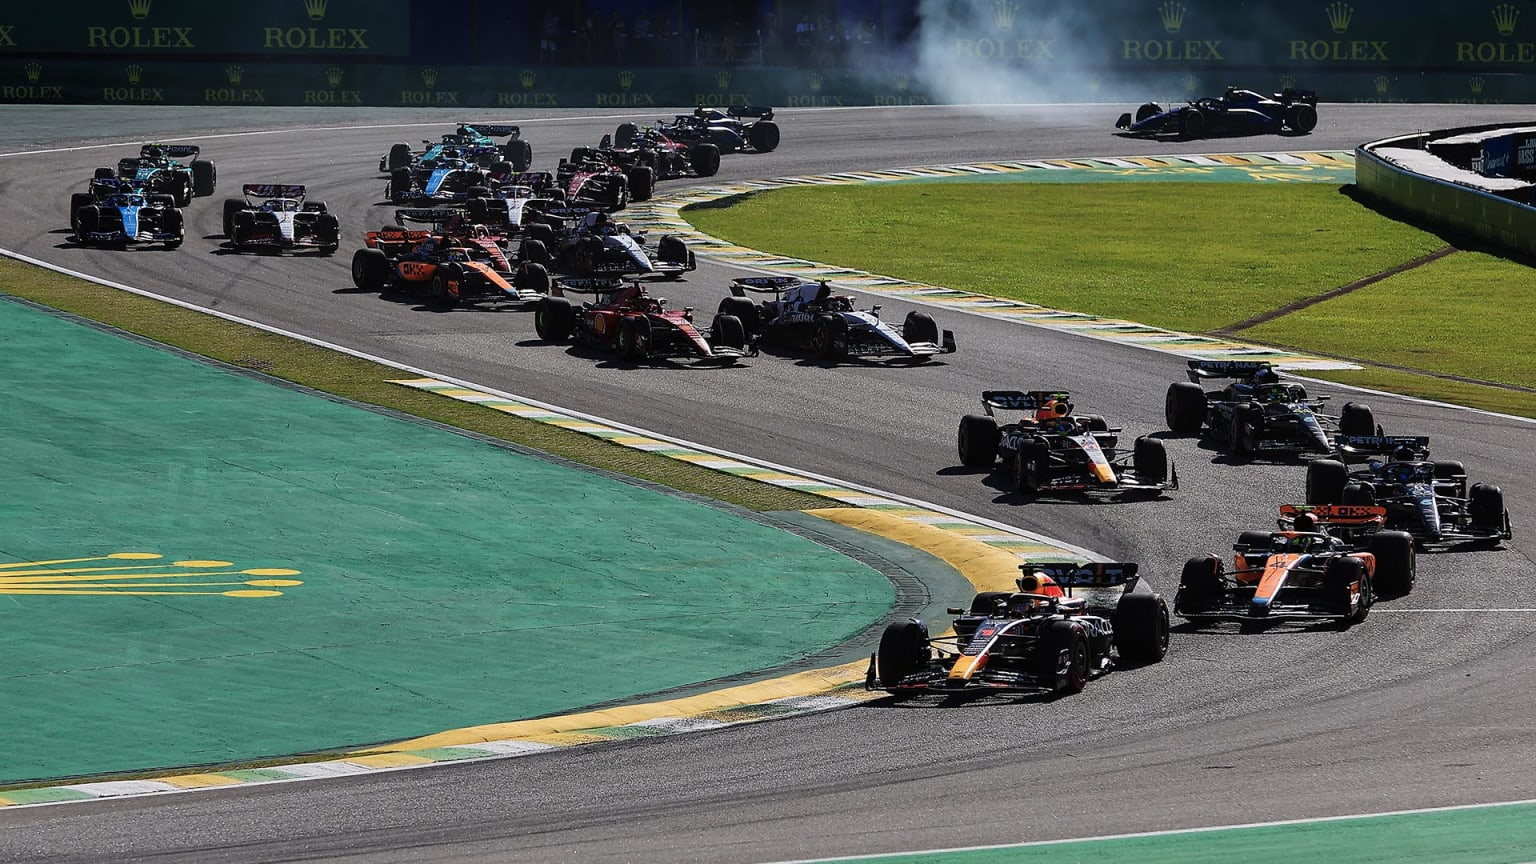 Sao Paulo Grand Prix 2022, Brazil F1 Race